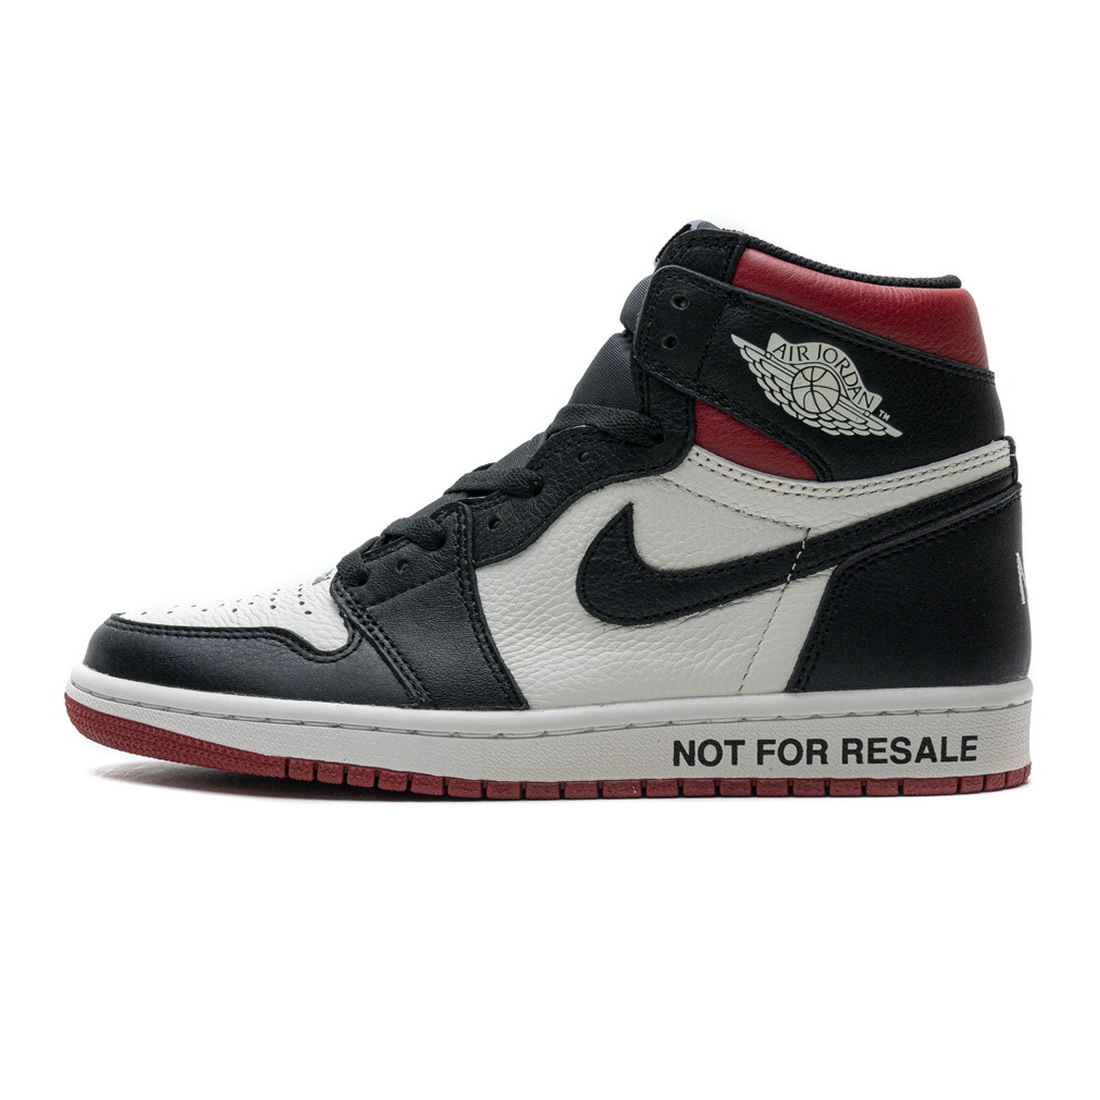 Nike 861428 106 Air Jordan 1 Nrg Og High Not For Resale Varsity Red 1 - www.kickbulk.org